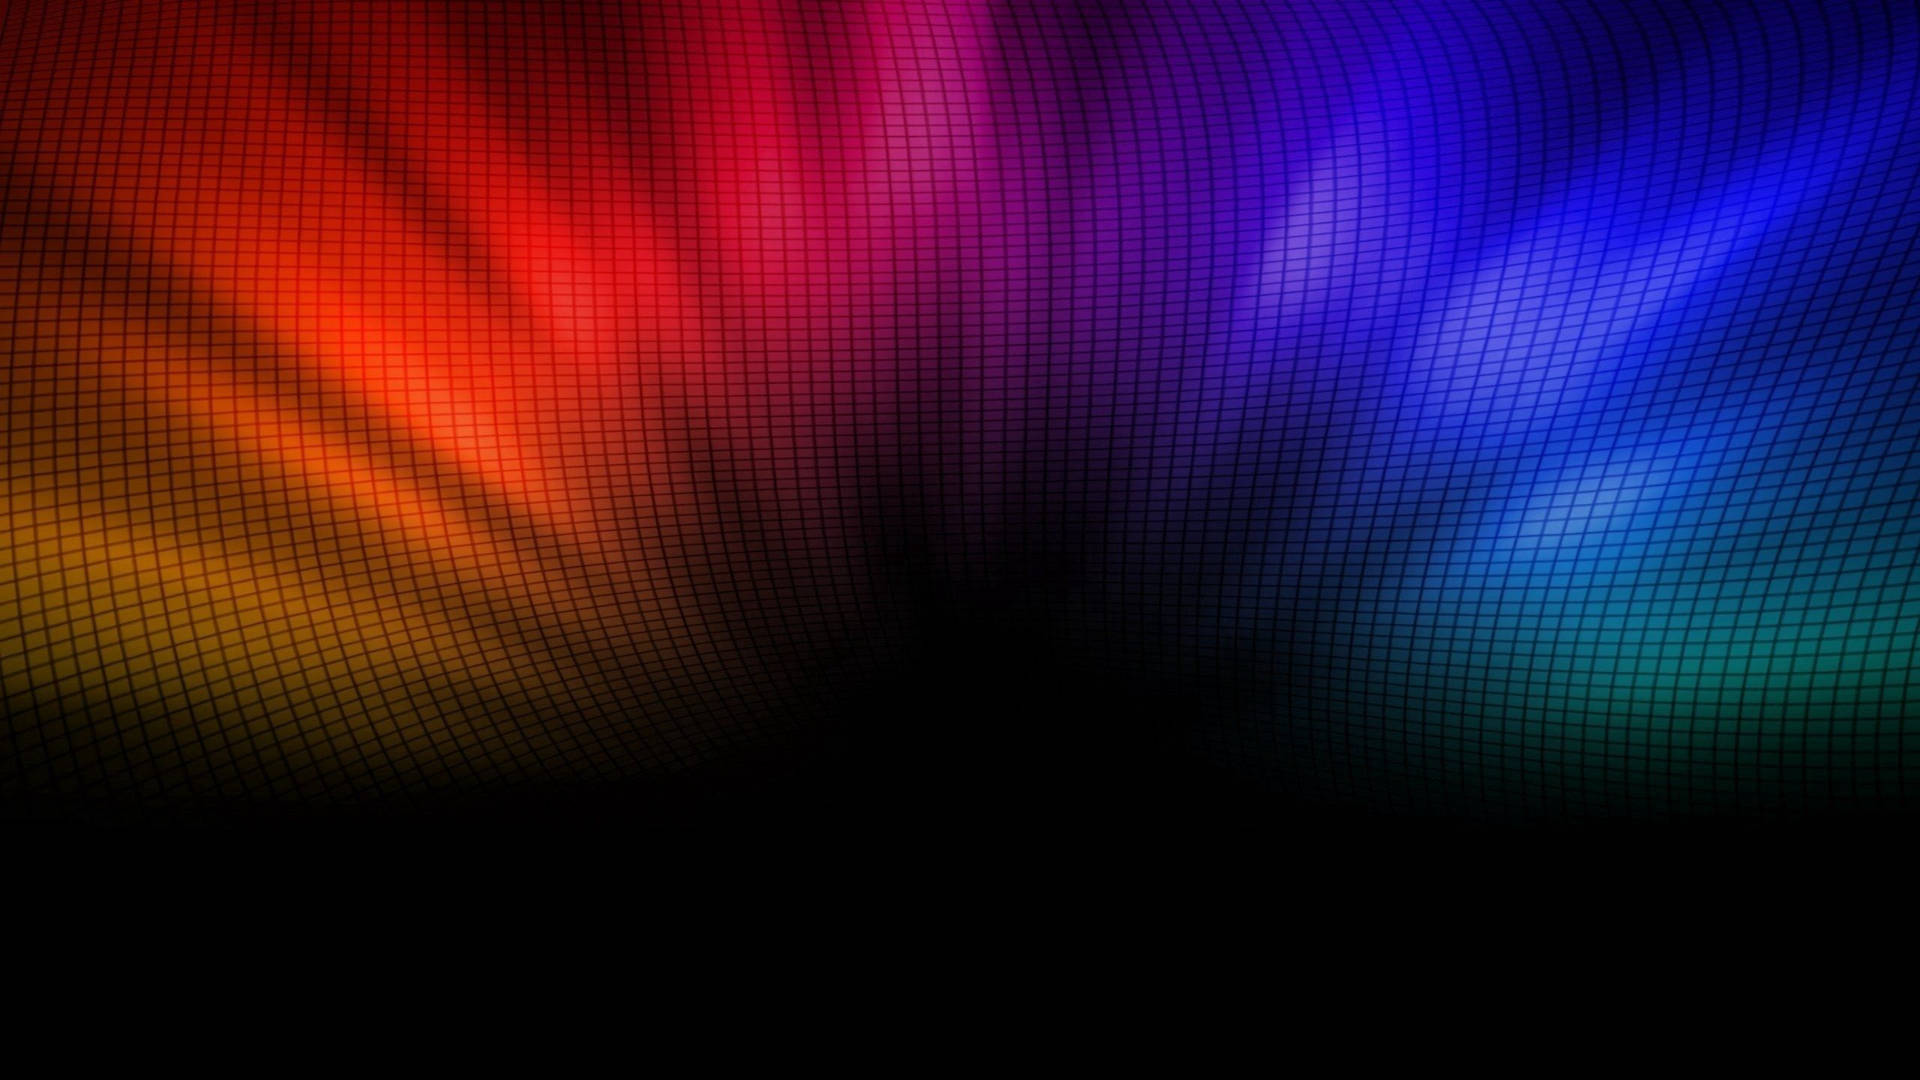 A Vibrant Rainbow Grid Wallpaper